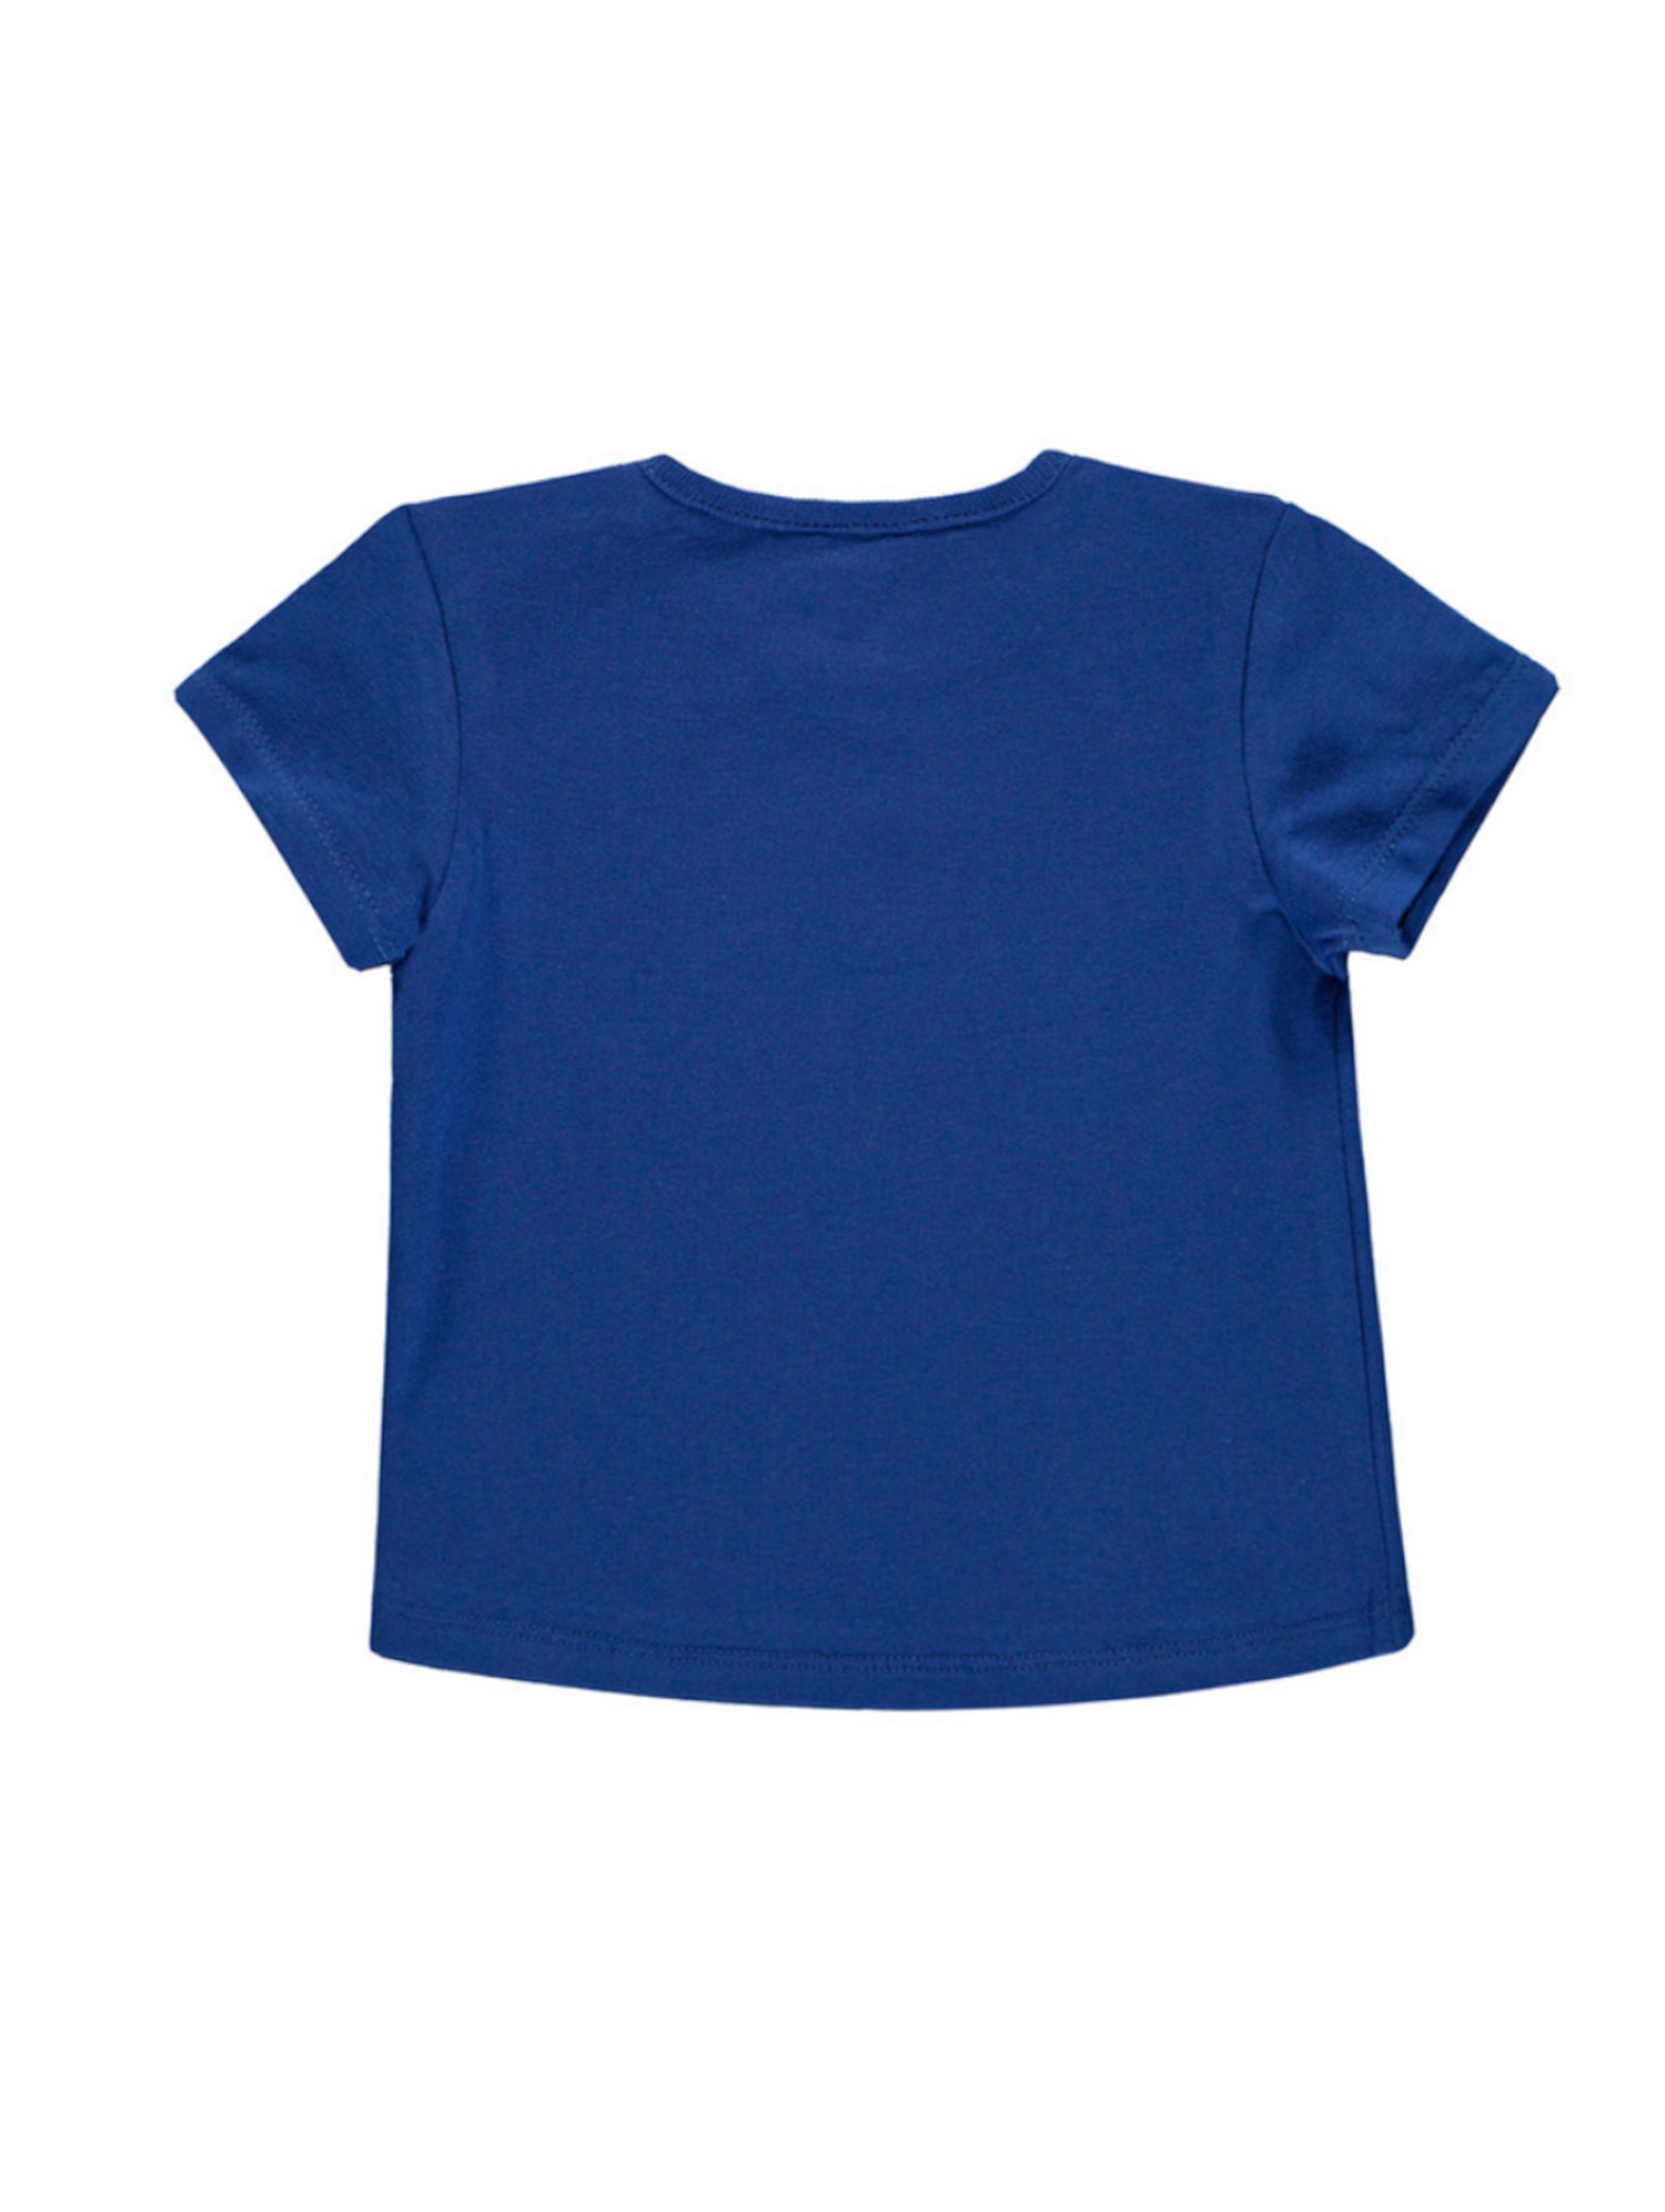 Dziewczęca bluzka z krótkim rękawem niebieska